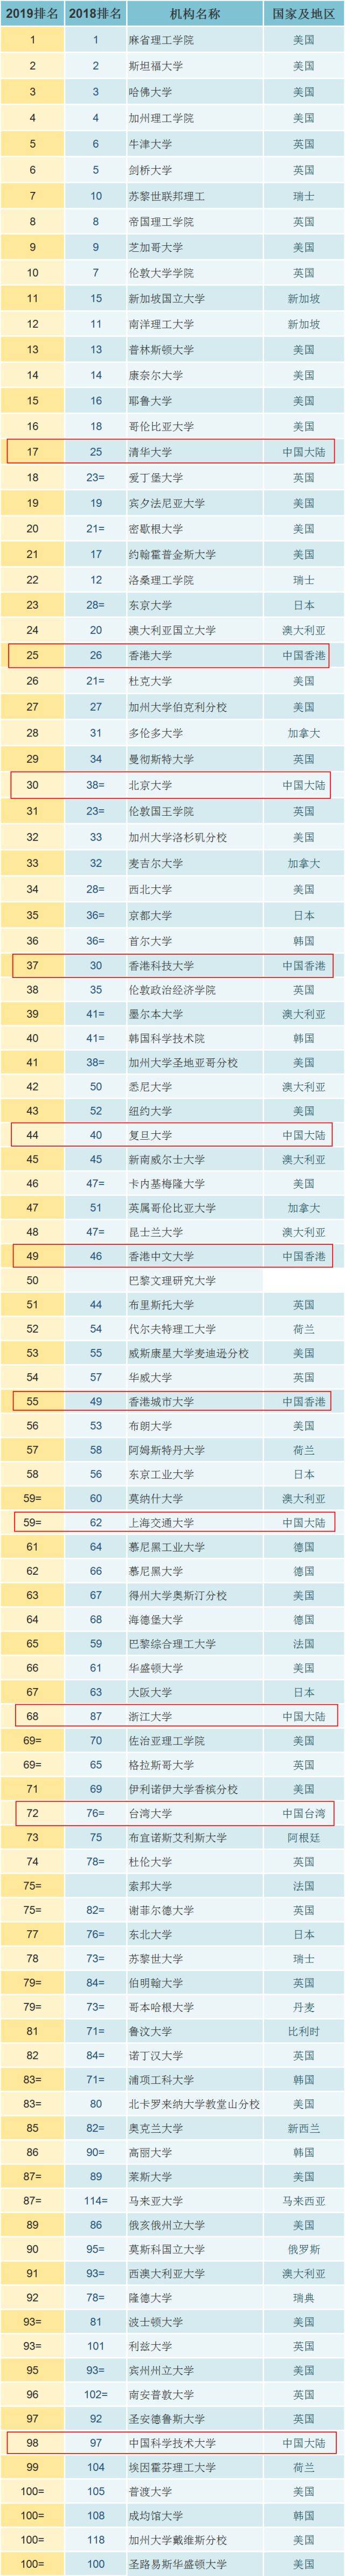 2019年qs世界大学排名!点击查看中国 世界百强院校